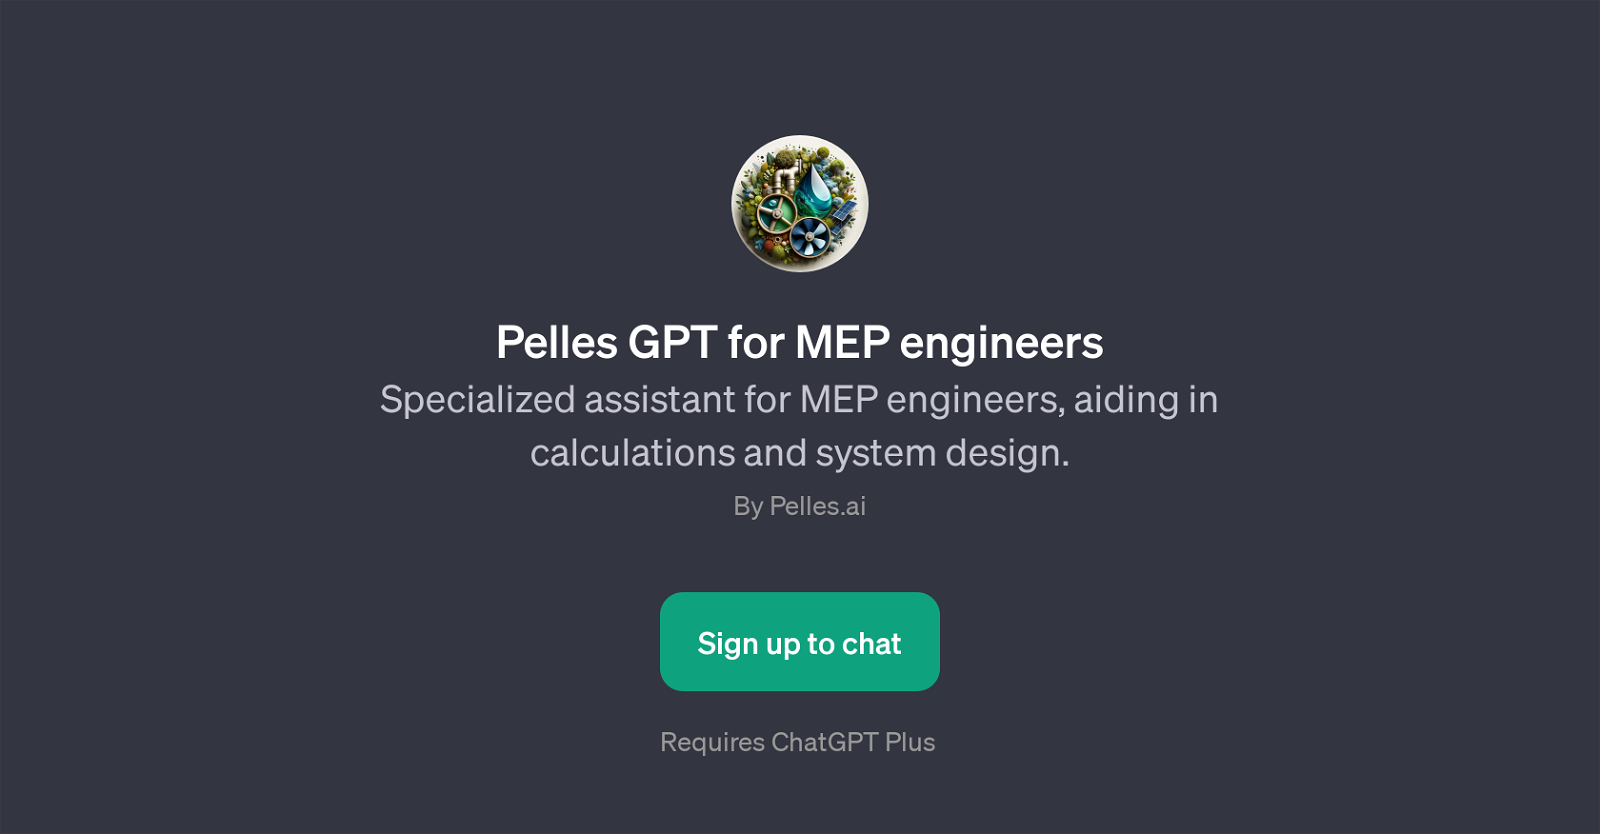 Pelles GPT for MEP engineers website